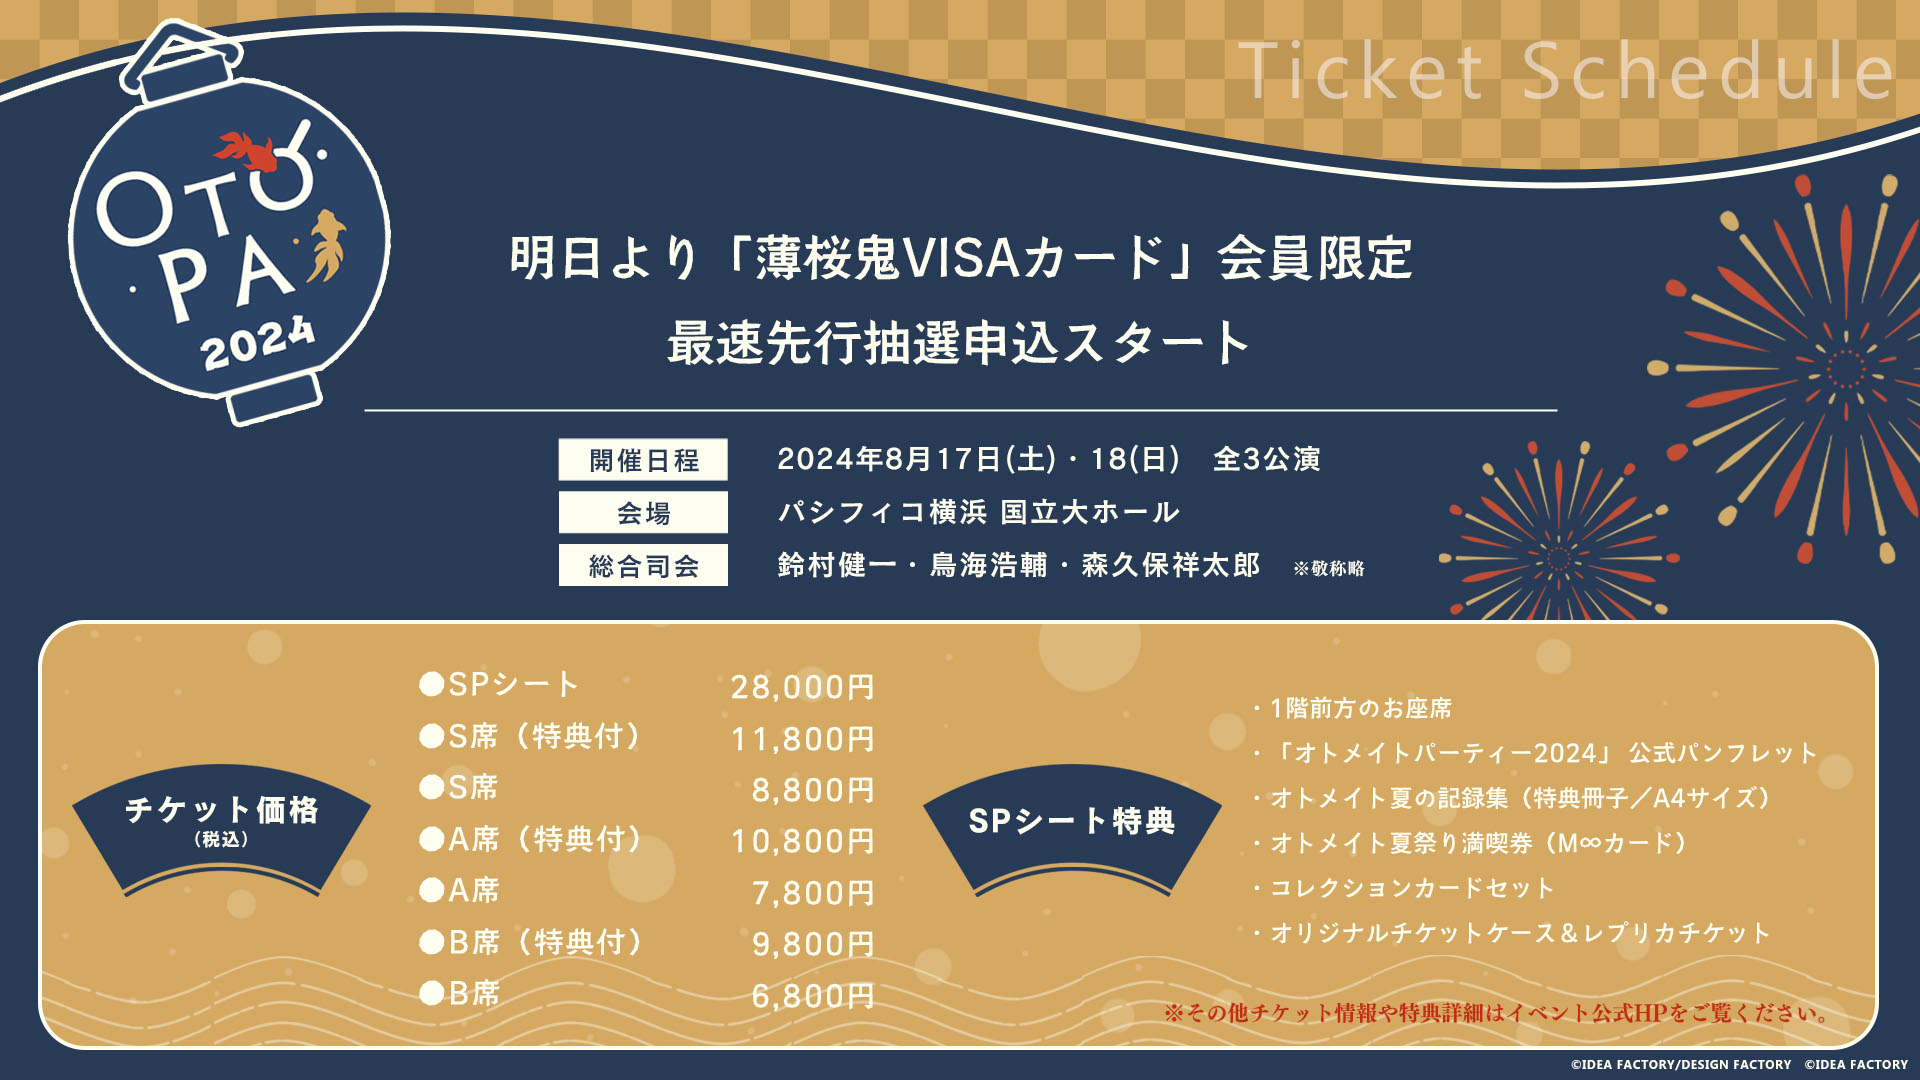 「オトメイトパーティー2024」薄桜鬼VISAカード会員限定最速先行抽選申込